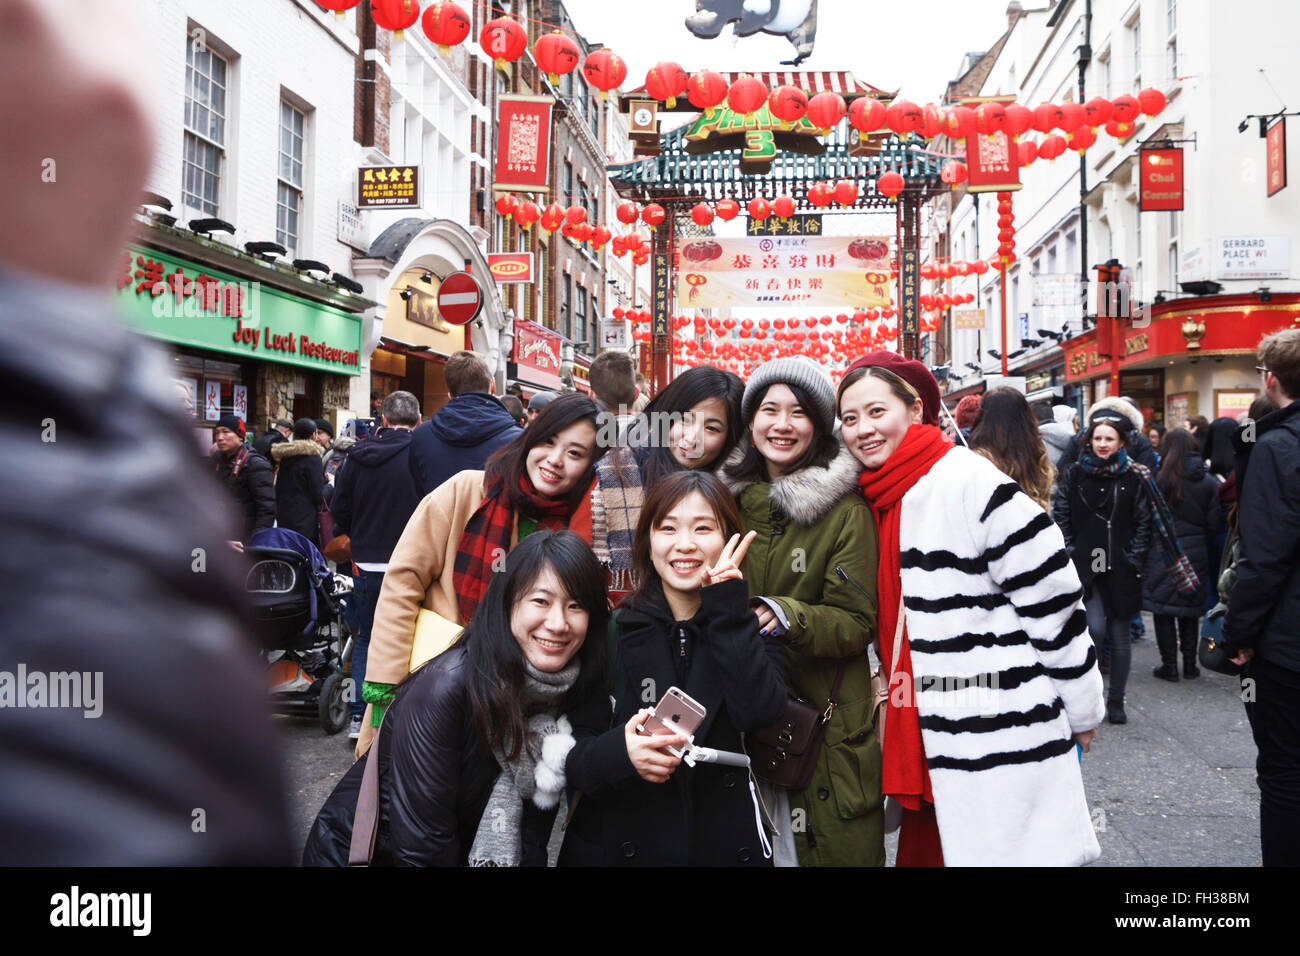 Chinesische Neujahrsfeiern London, Chinatown. Junge chinesische Mädchen werden fotografiert. China Großbritannien. China London. Besuchen Sie Großbritannien. London Tourismus. l Stockfoto